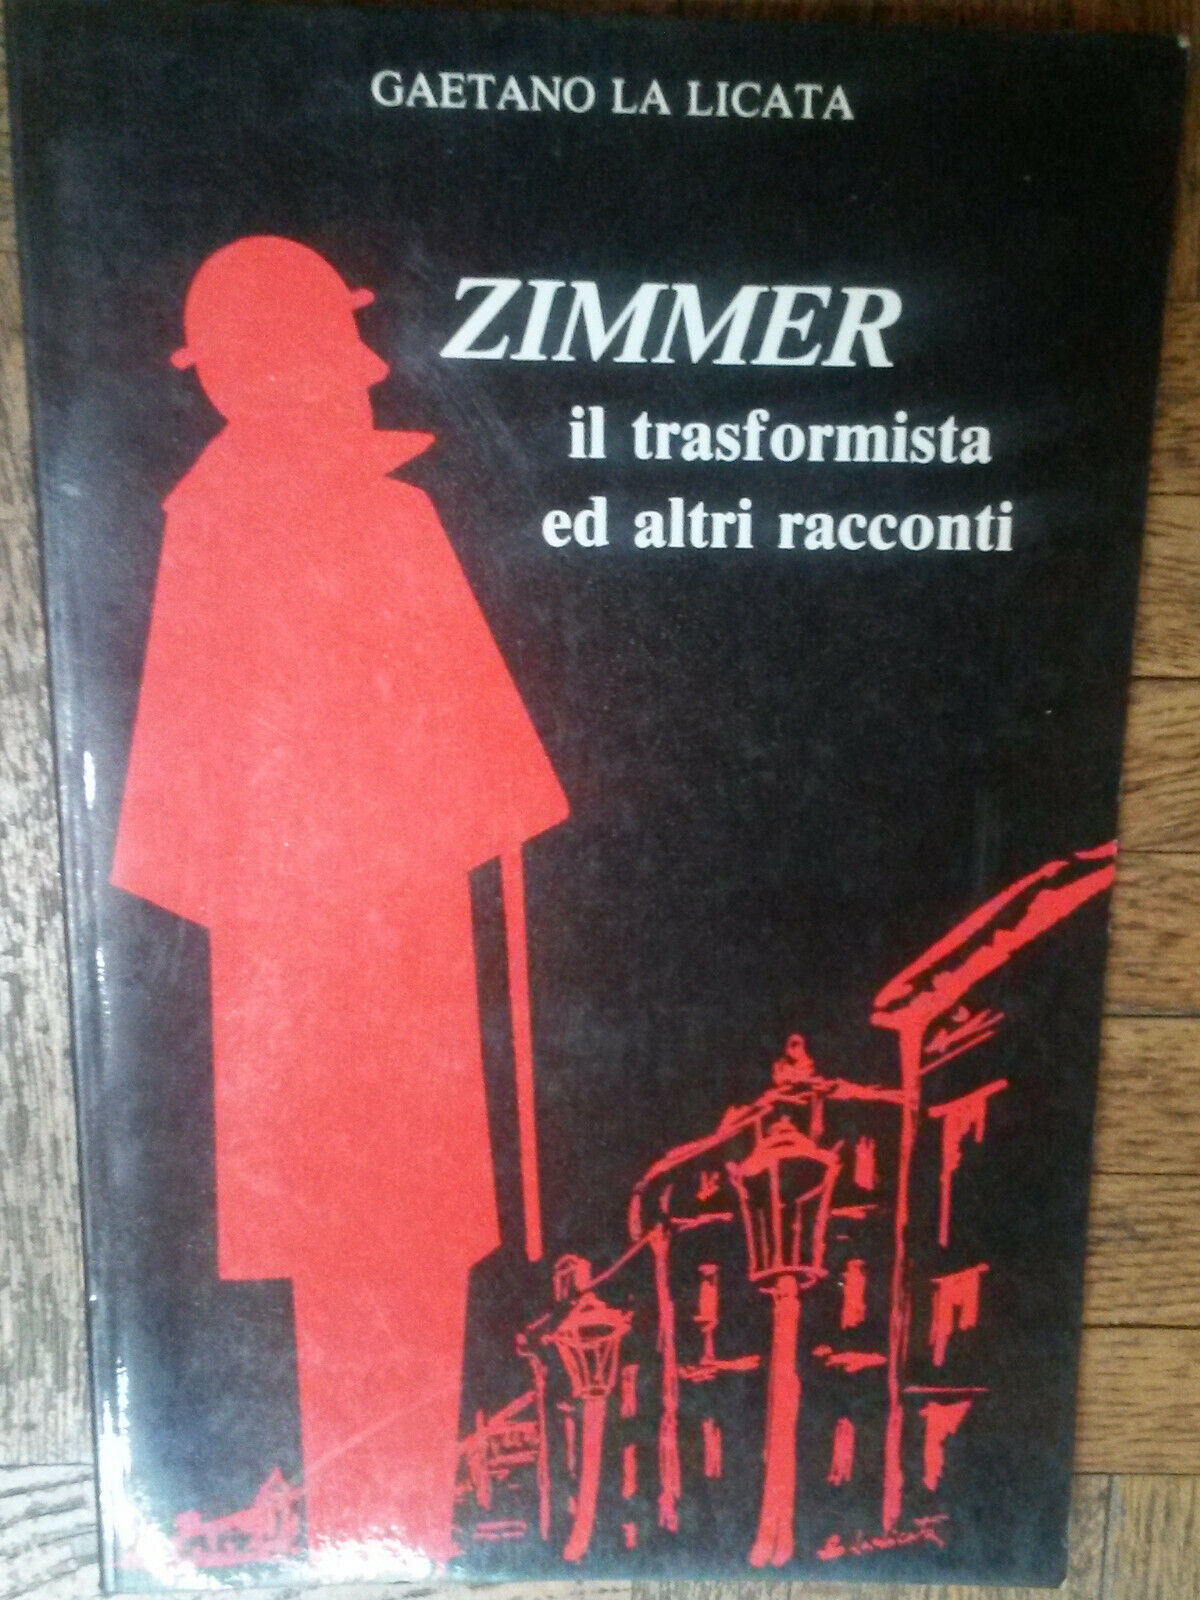 Zimmer il trasformista ed altri raccconti-Gaetano Licata-Signorello,1992-R